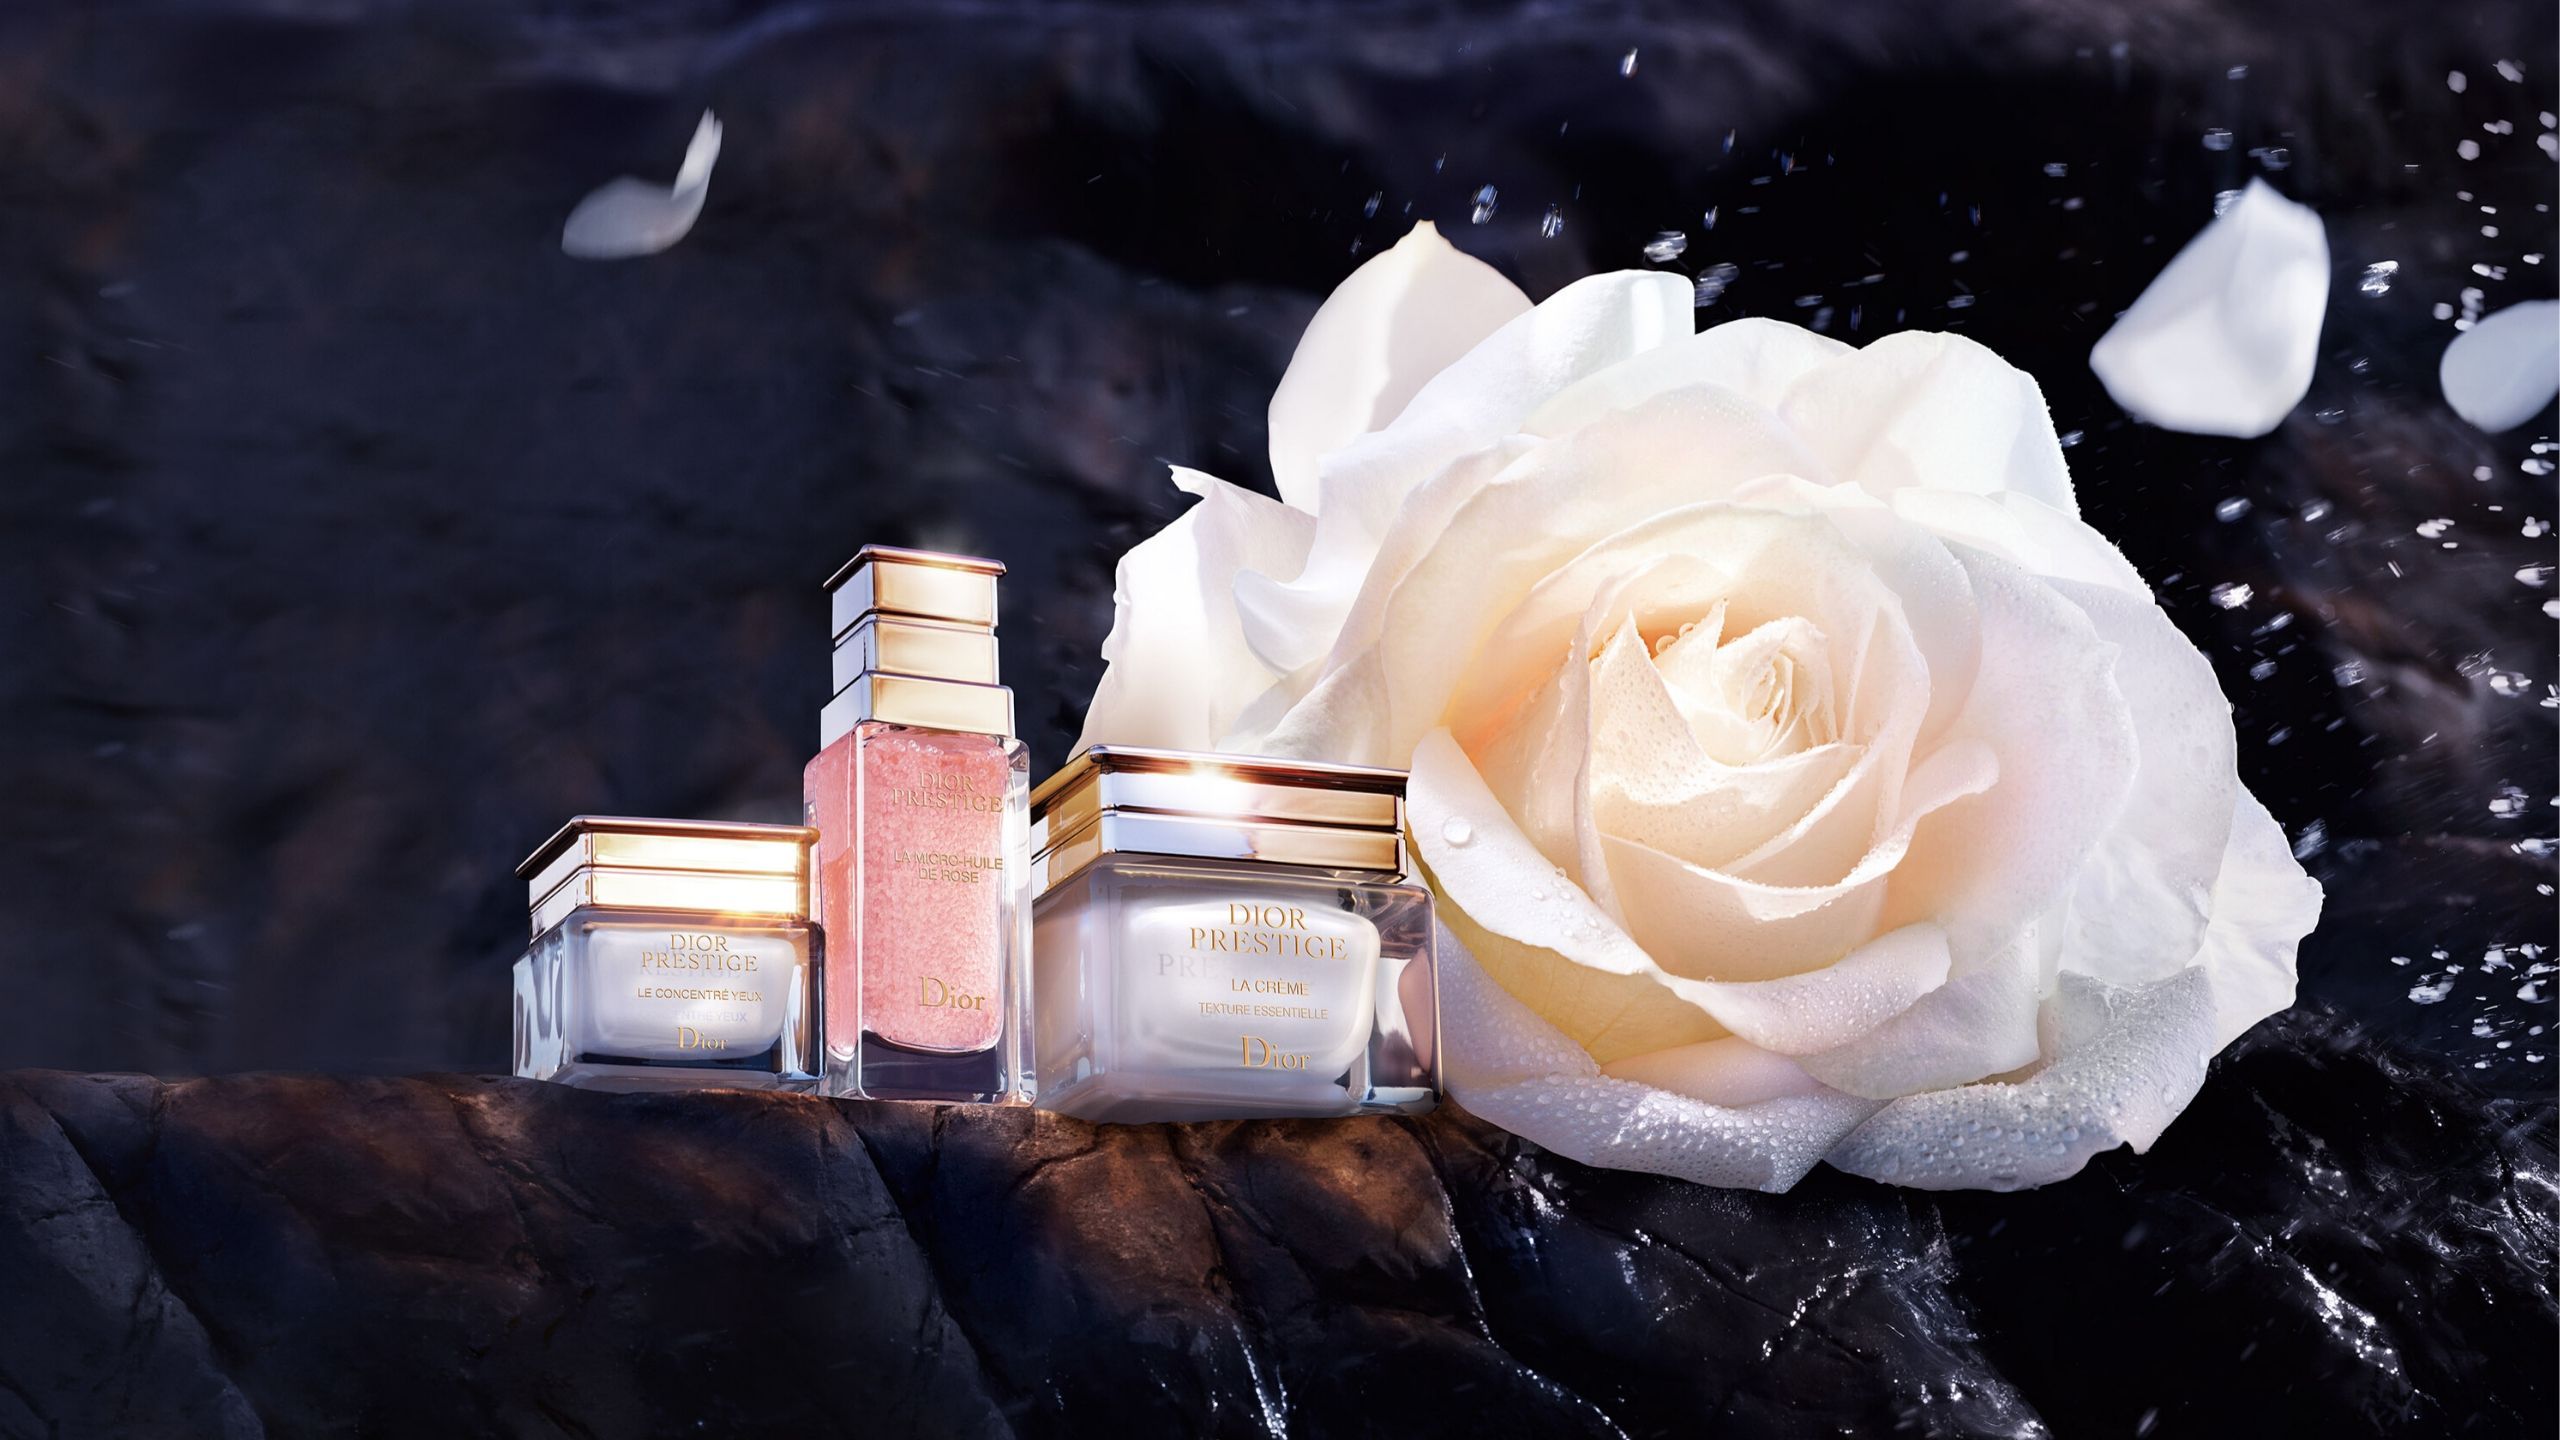 La Vie en Rose: The Secret Behind Dior’s Prestige La Crème